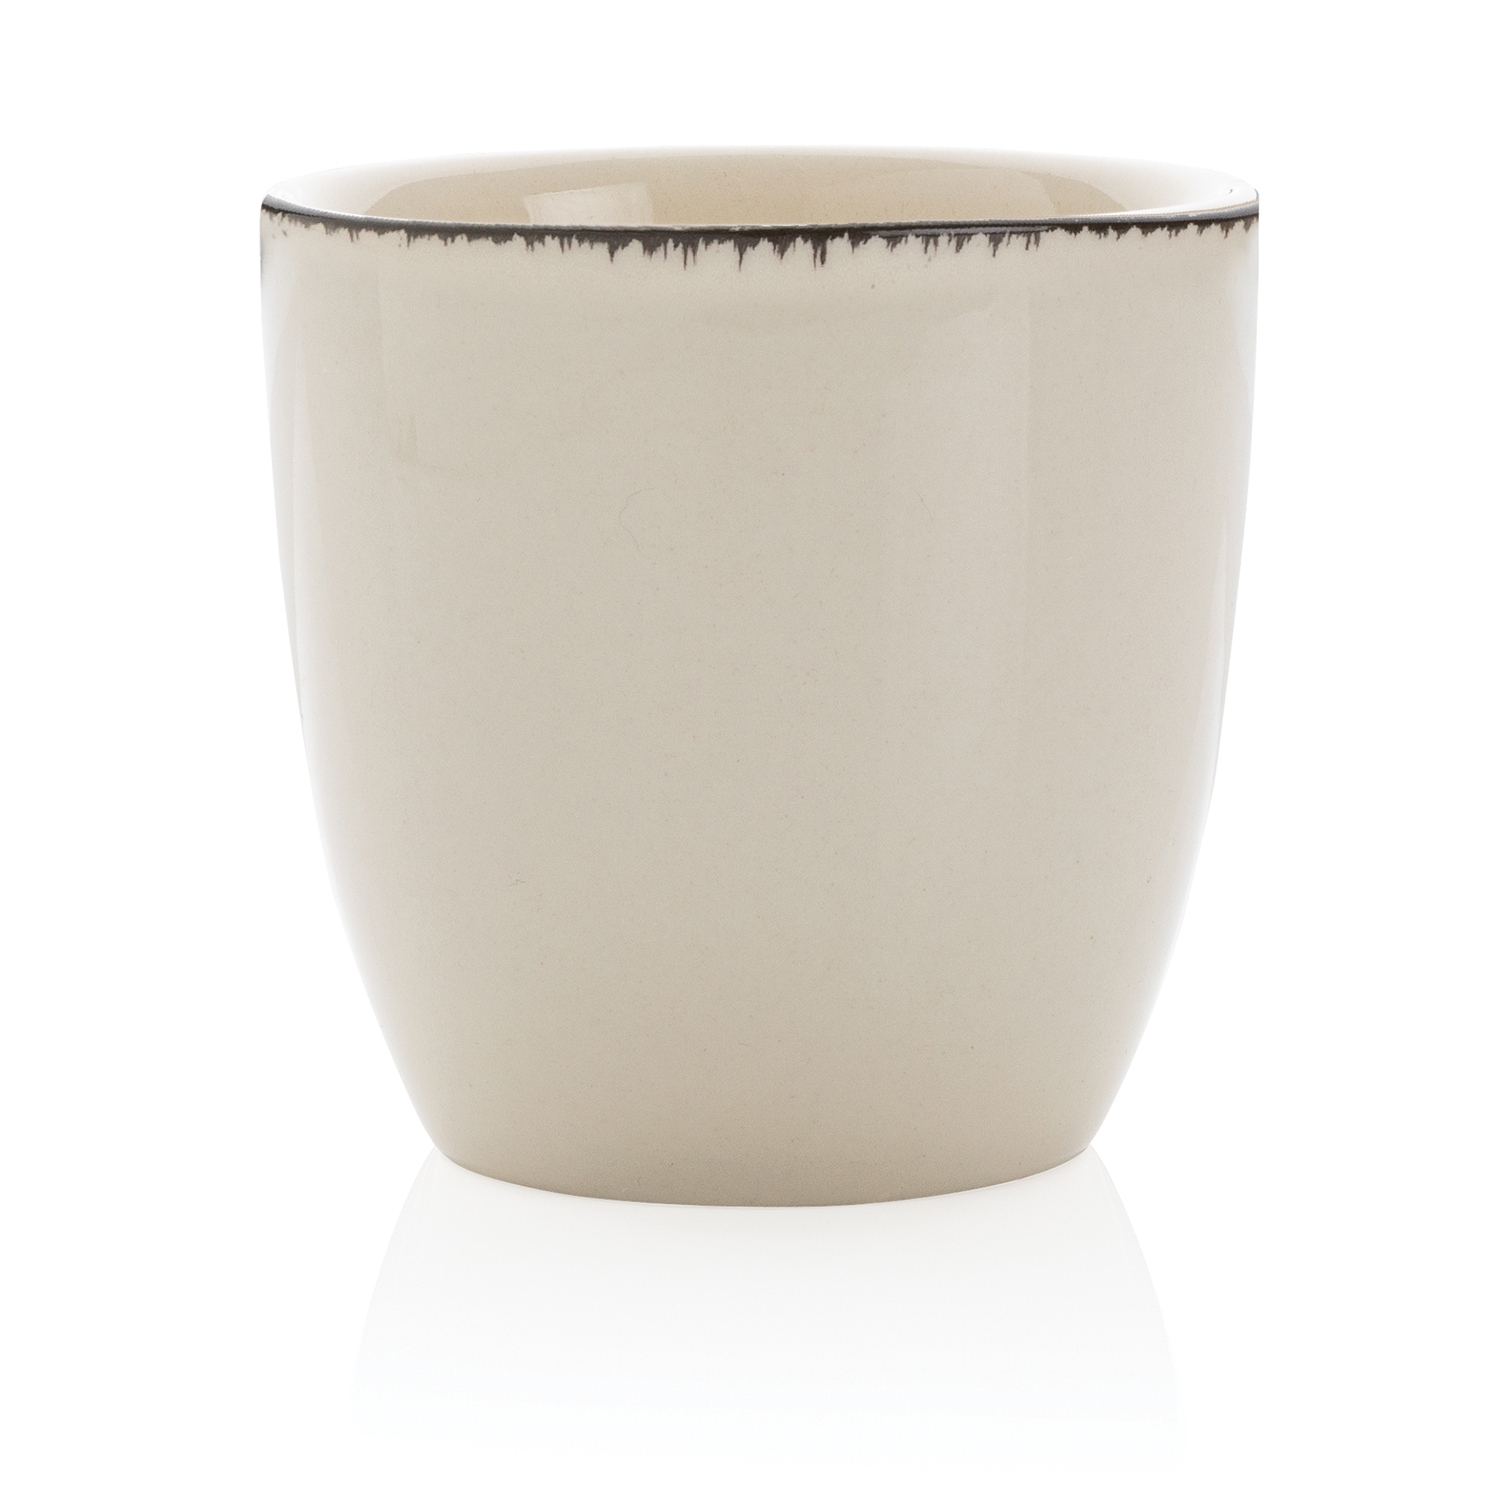 Набор керамических чашек Ukiyo, 4 предмета, керамика